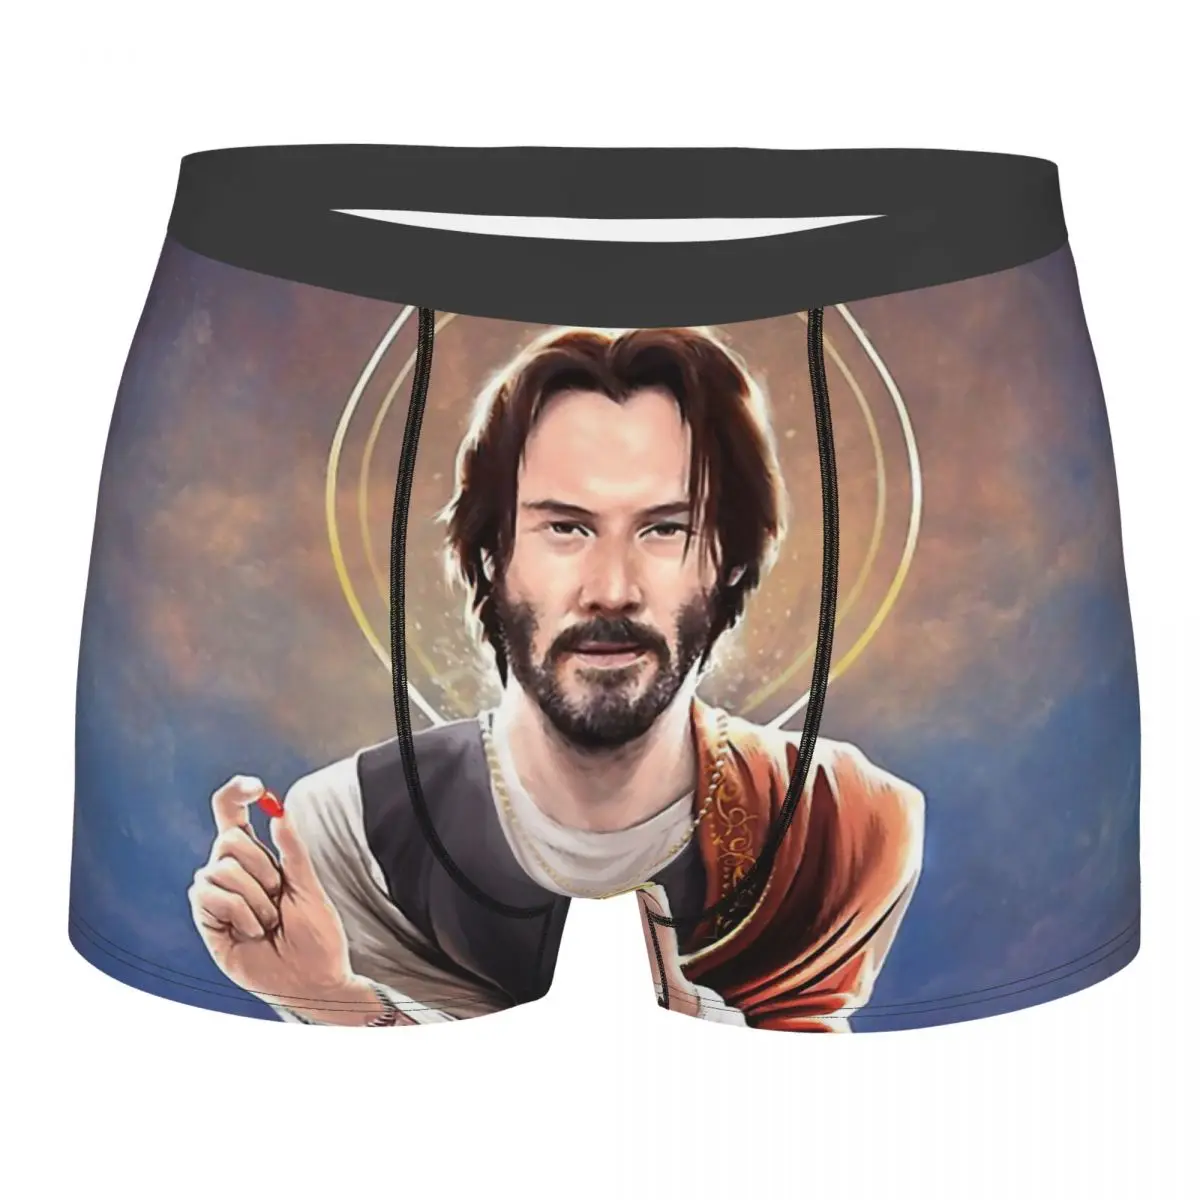 

Keanu Reeves Saint Keanu Of Reeves Underpants Cotton Panties Man Underwear Ventilate Shorts Boxer Briefs